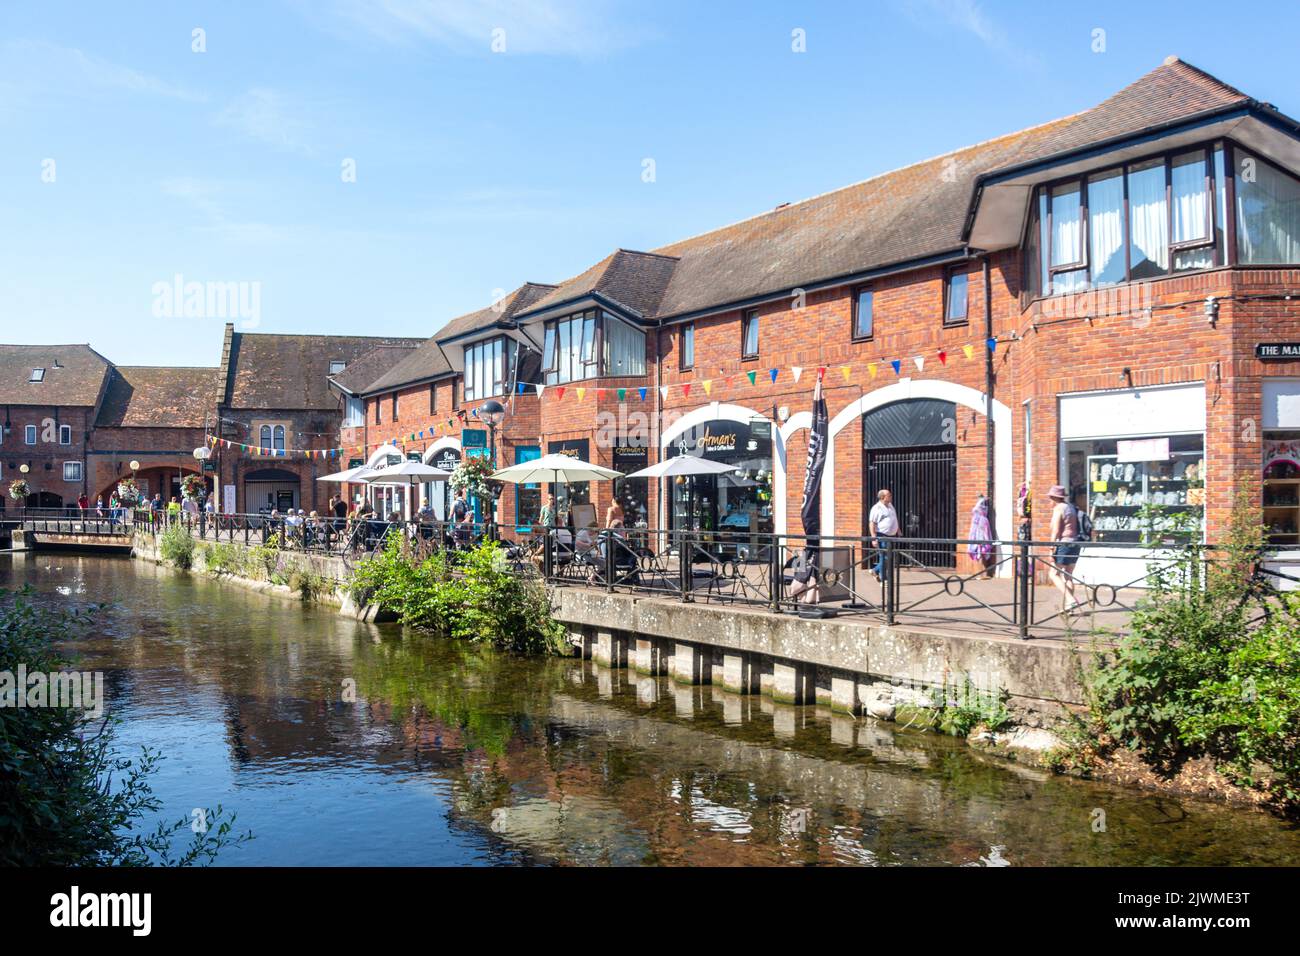 Boutiques et café au bord de la rivière, The Maltings, Salisbury, Wiltshire, Angleterre, Royaume-Uni Banque D'Images